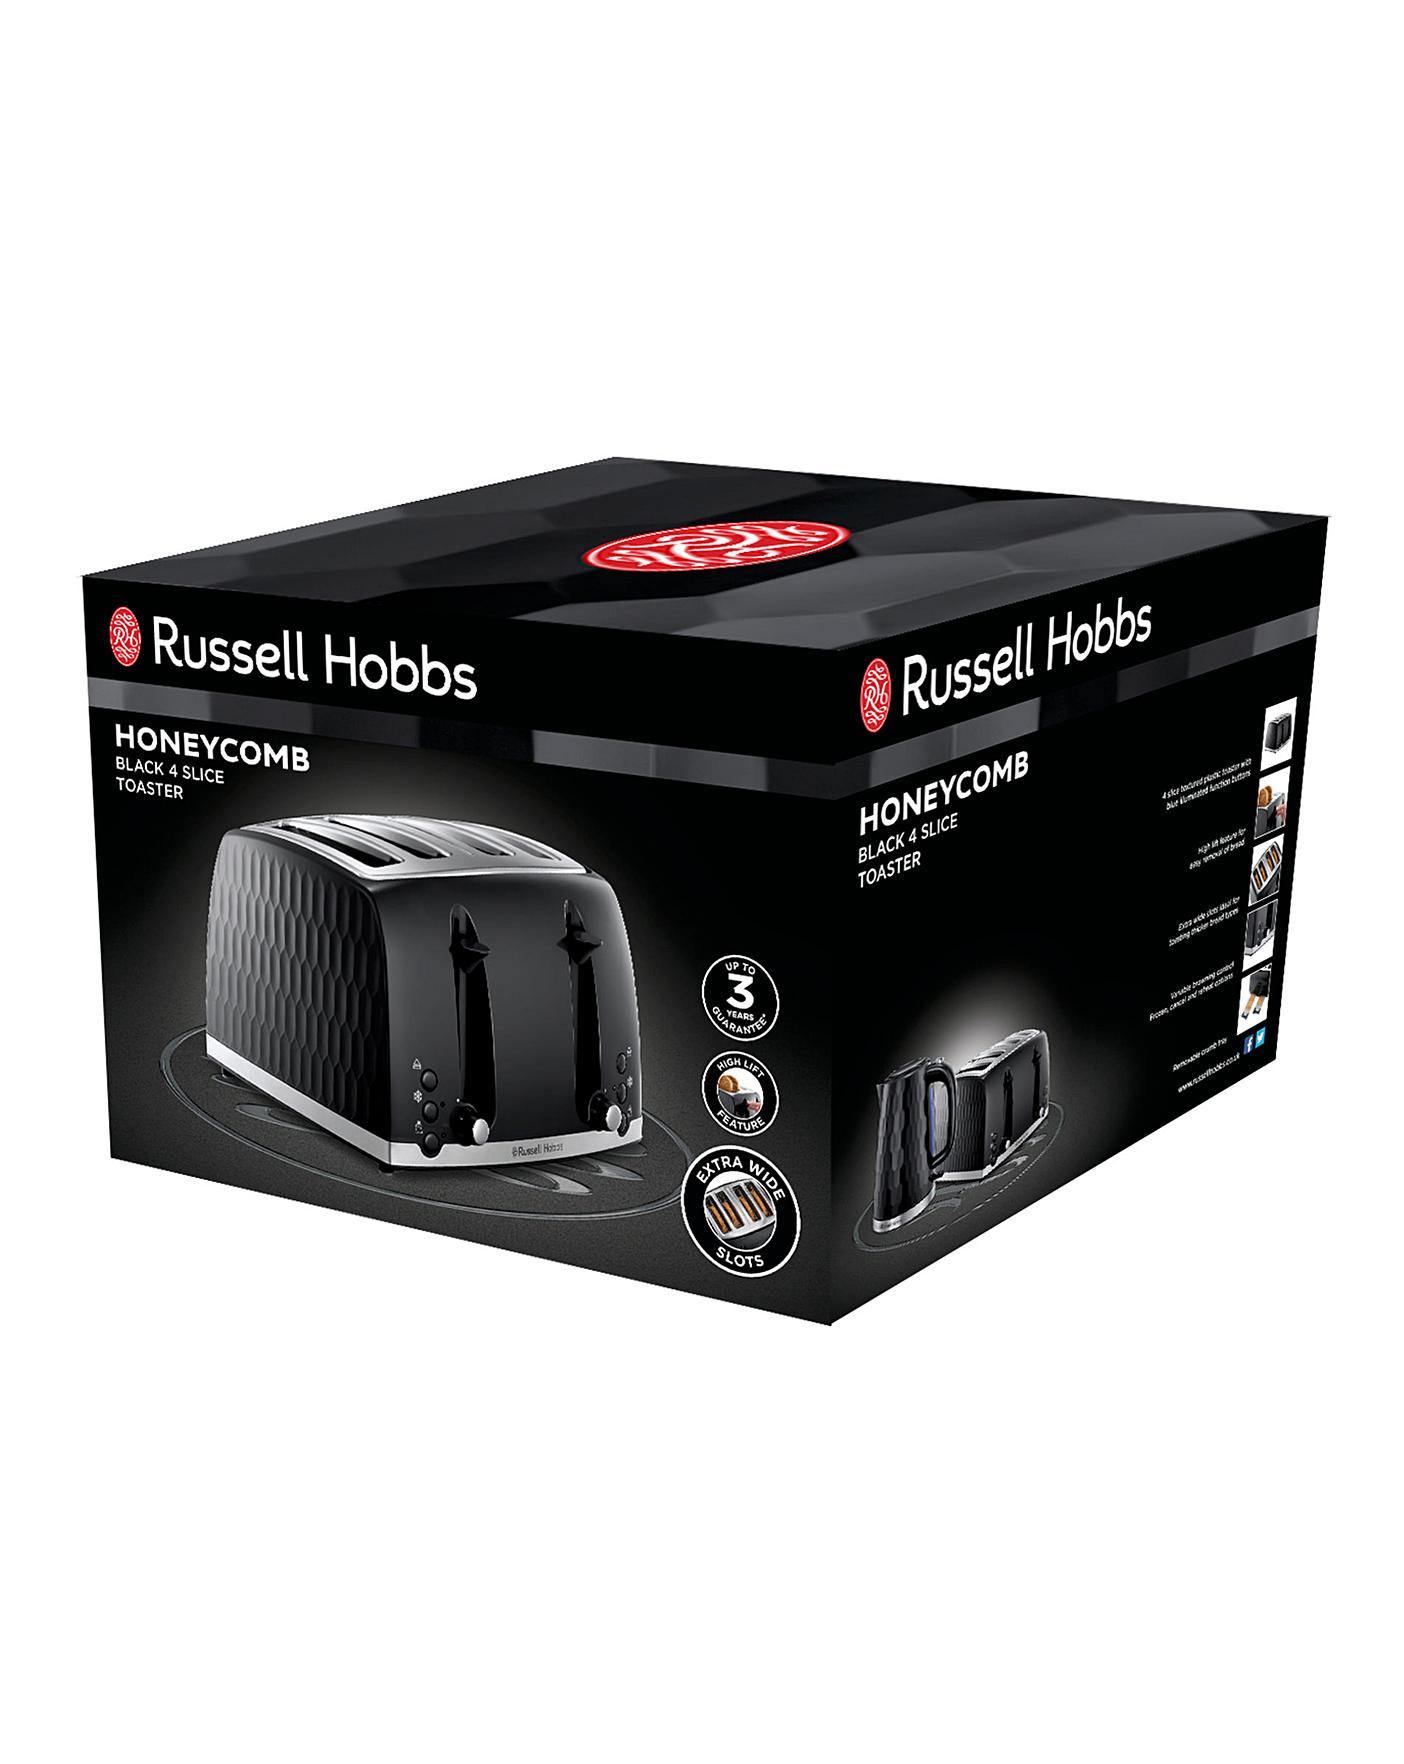 Buy Russell Hobbs 26071 Honeycomb 4 Slice Toaster - Black